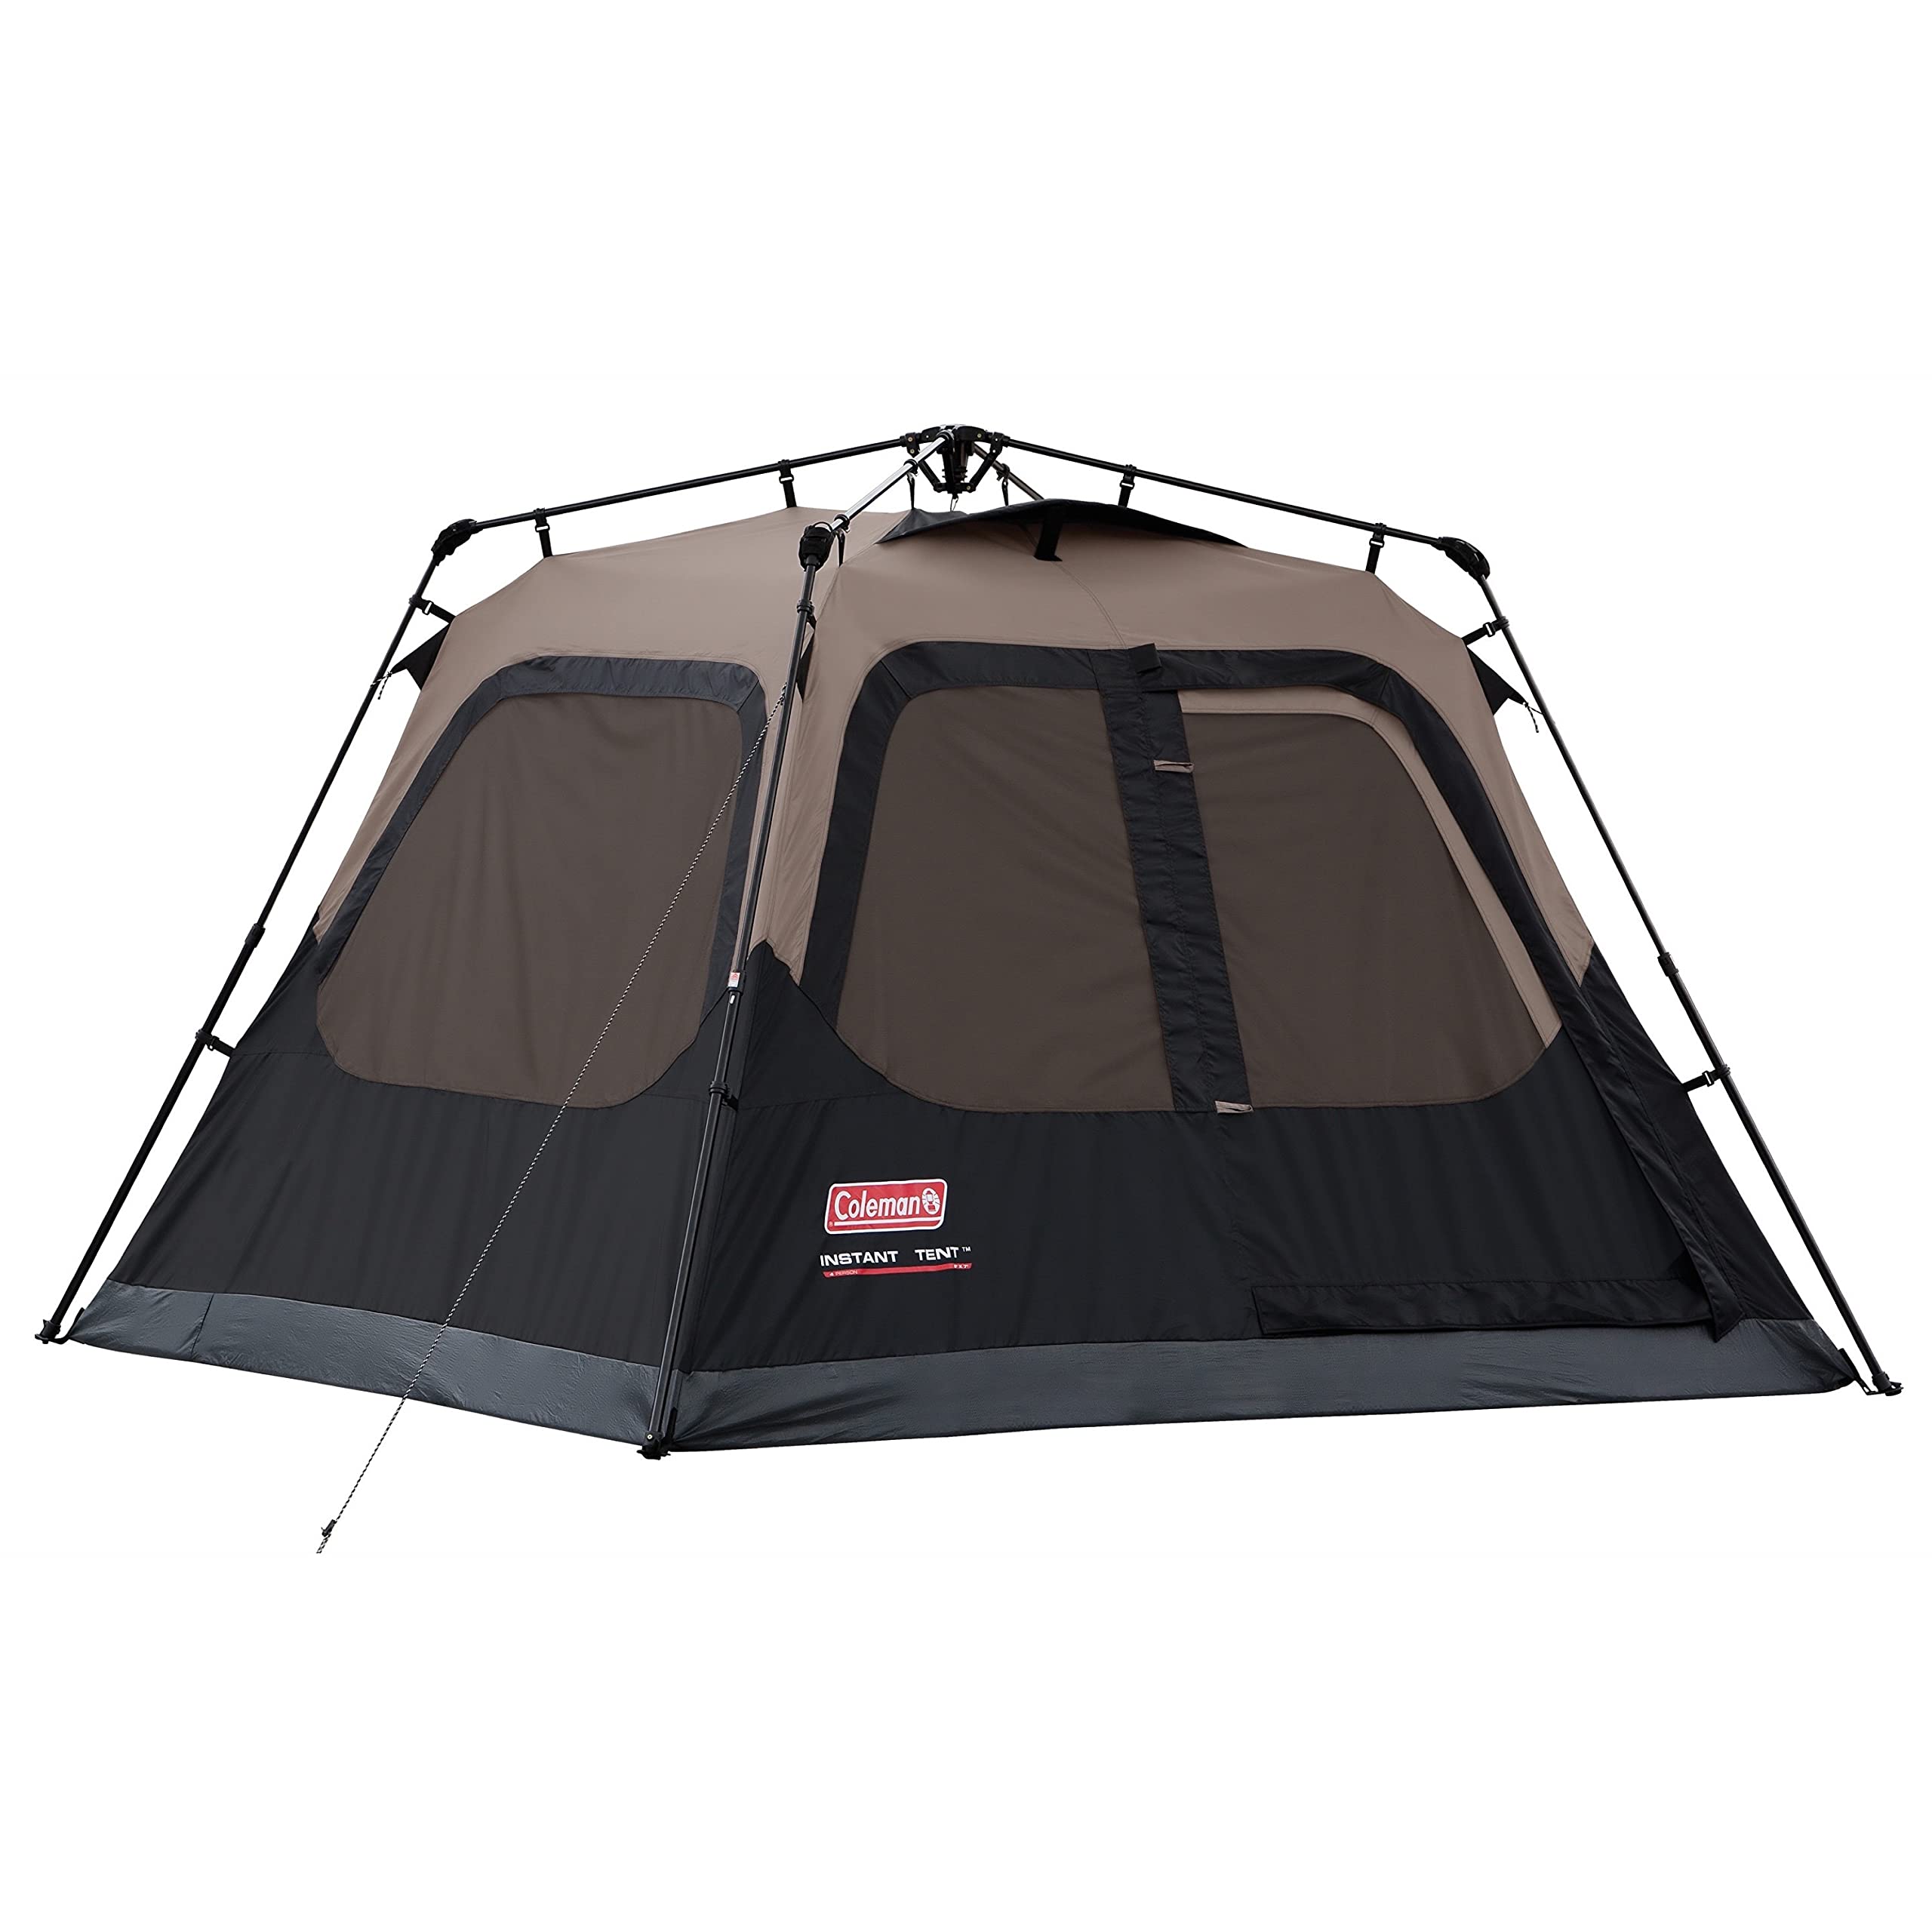 Coleman Cabine Tenda para 4 Pessoas com Configuração Instantânea | Barraca de cabine para camping montada em 60 segundos